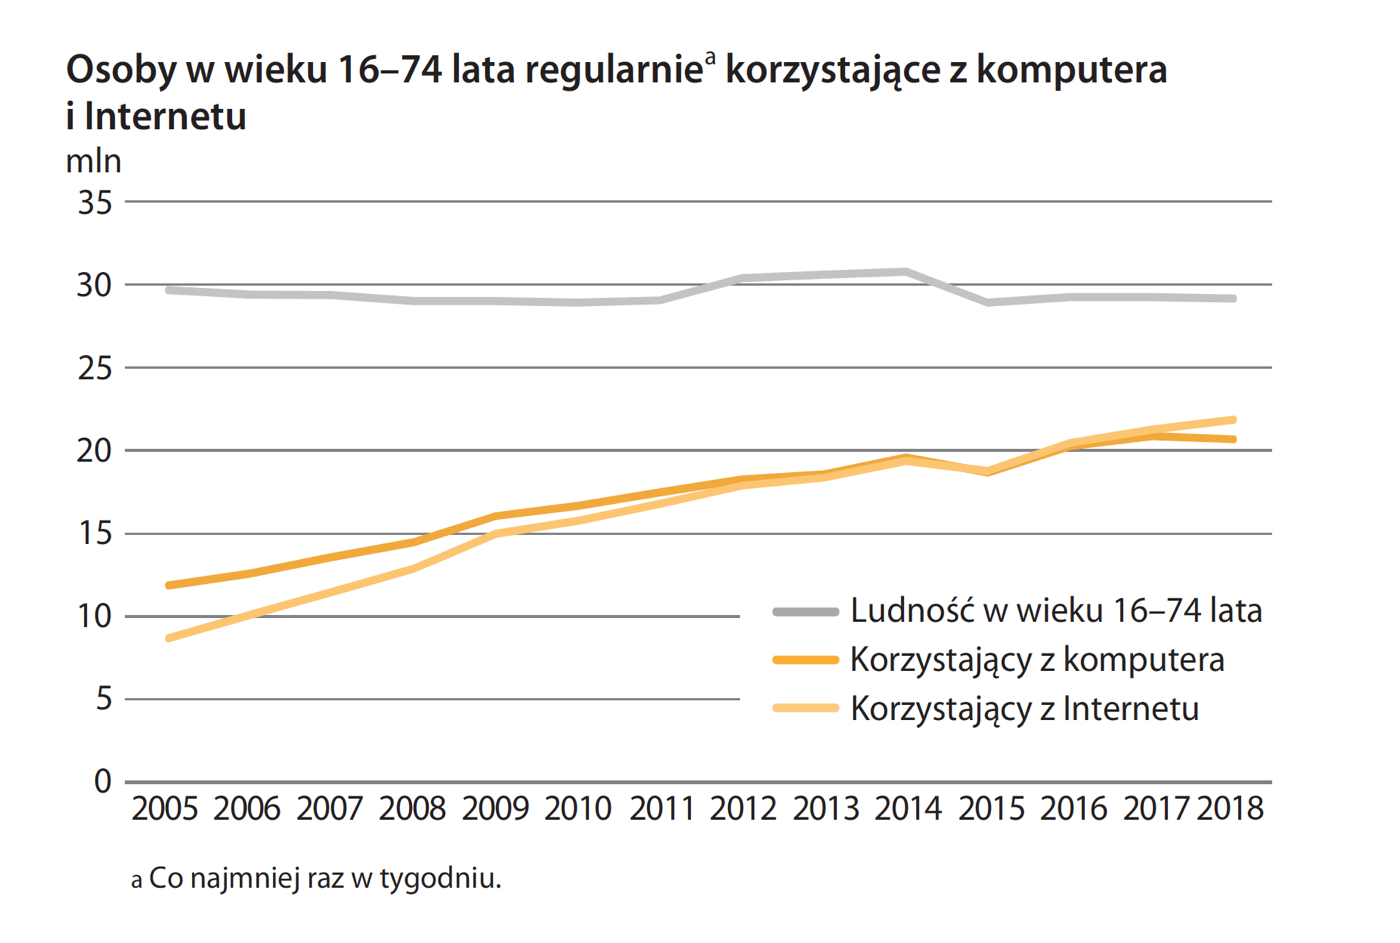 Osoby korzystające z komputera i internetu w Polsce (GUS, 2018)